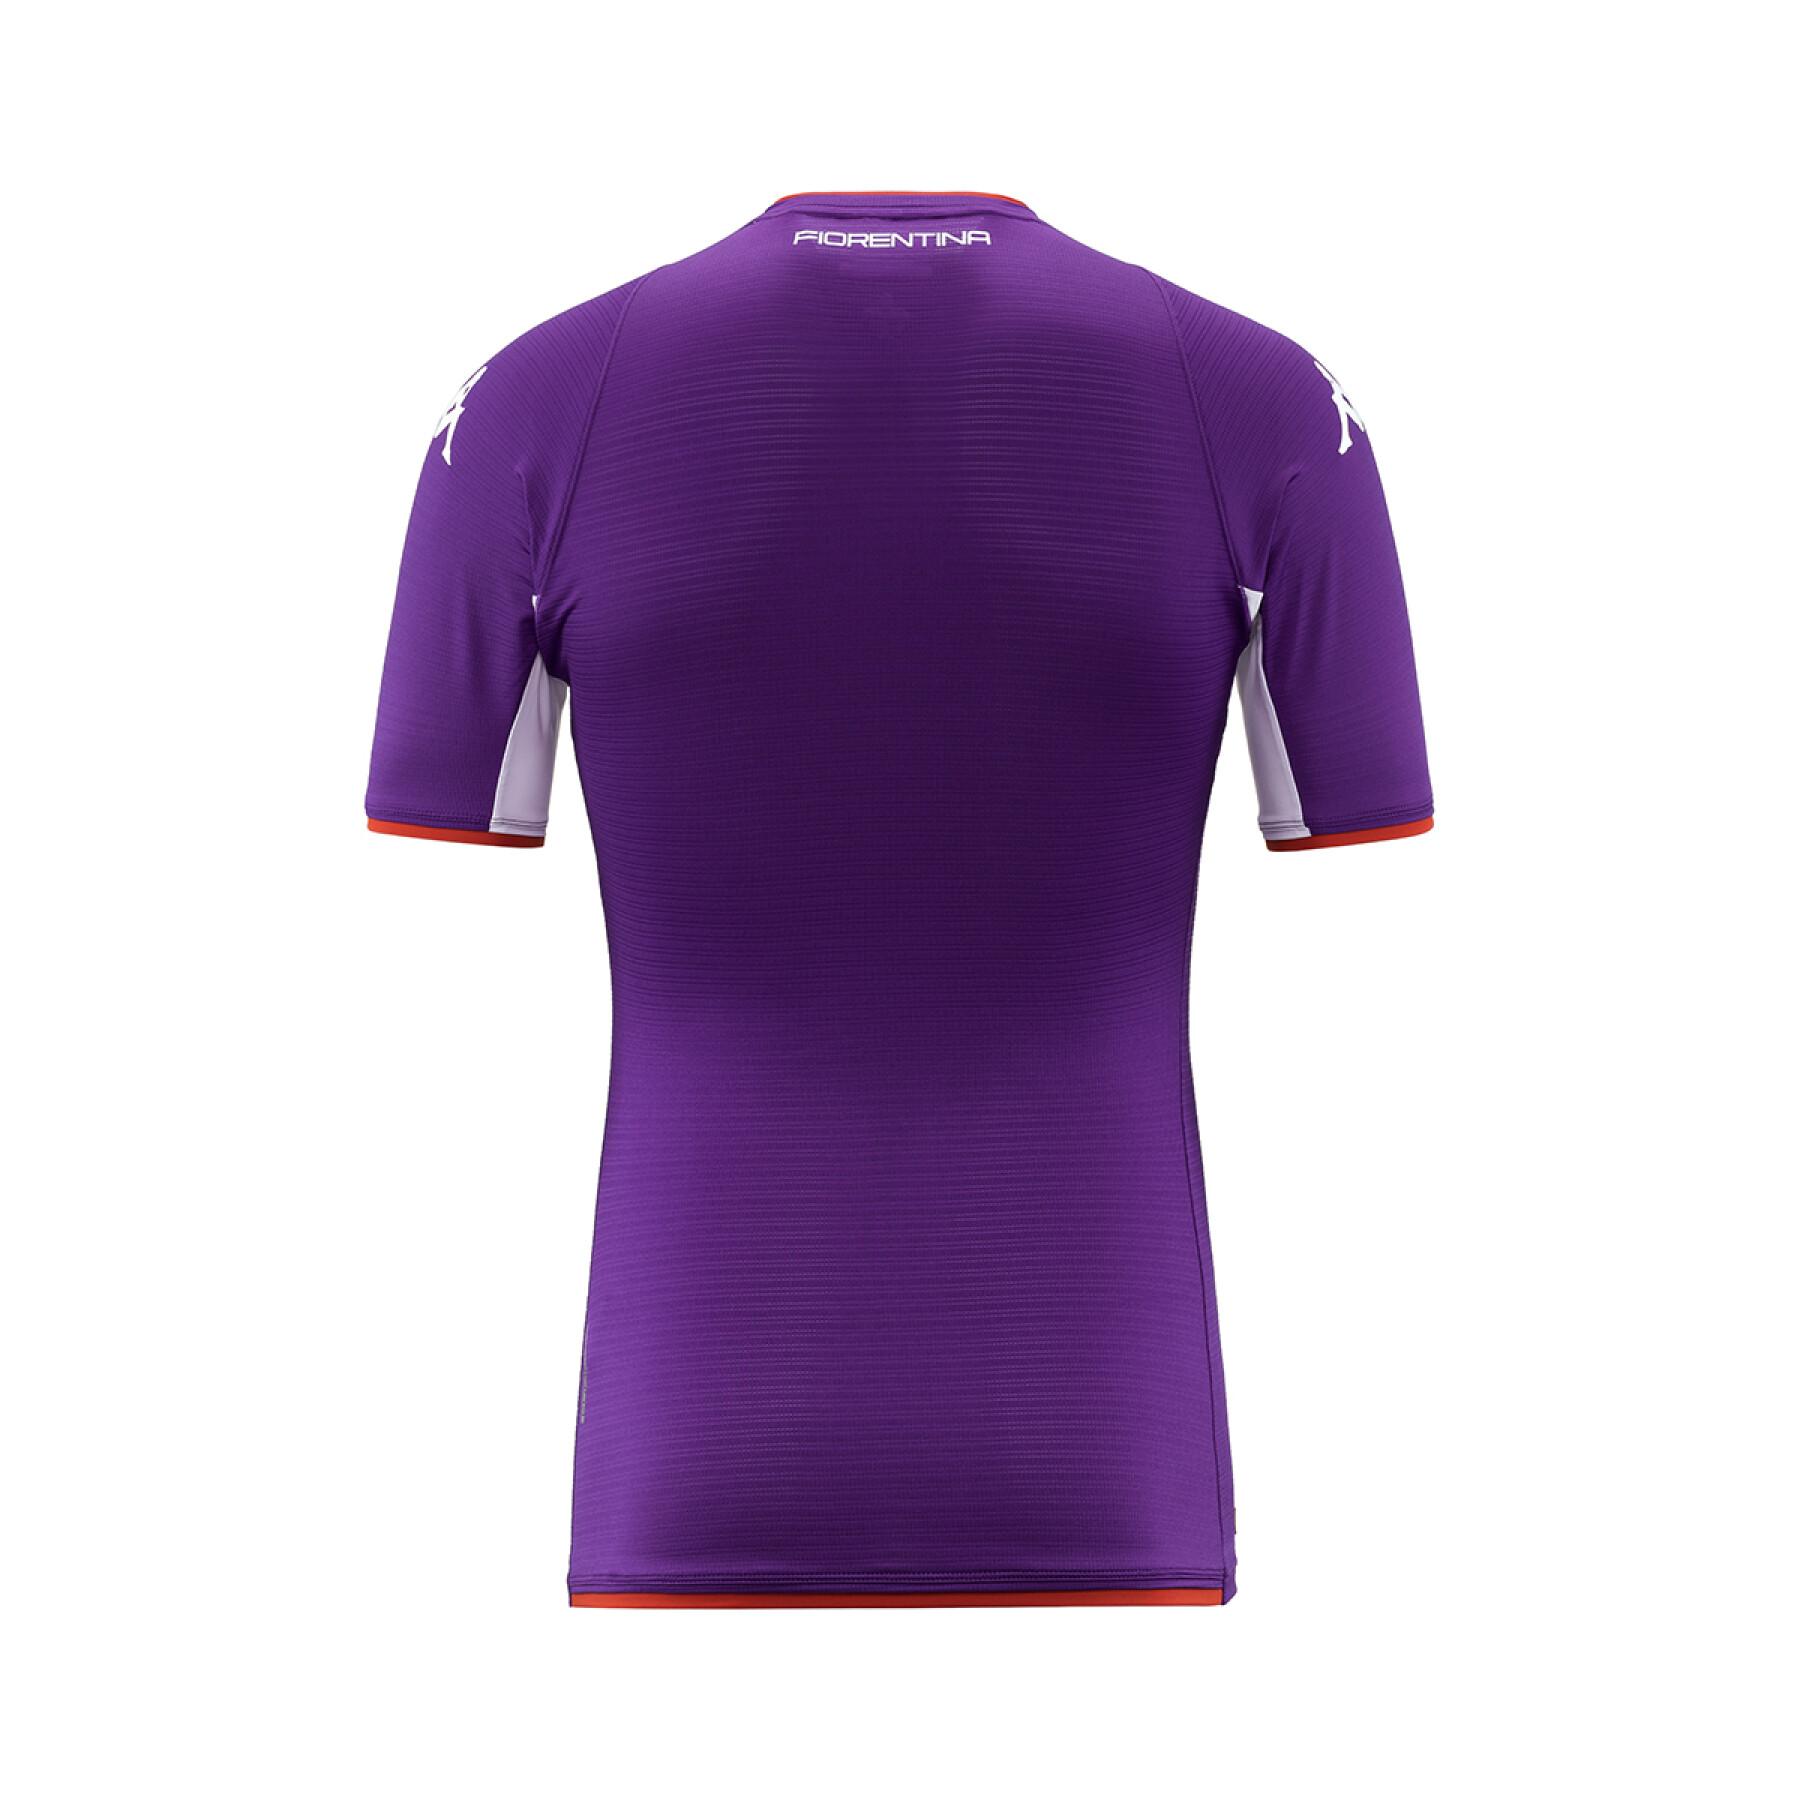 Thuisshirt Fiorentina AC 2021/22